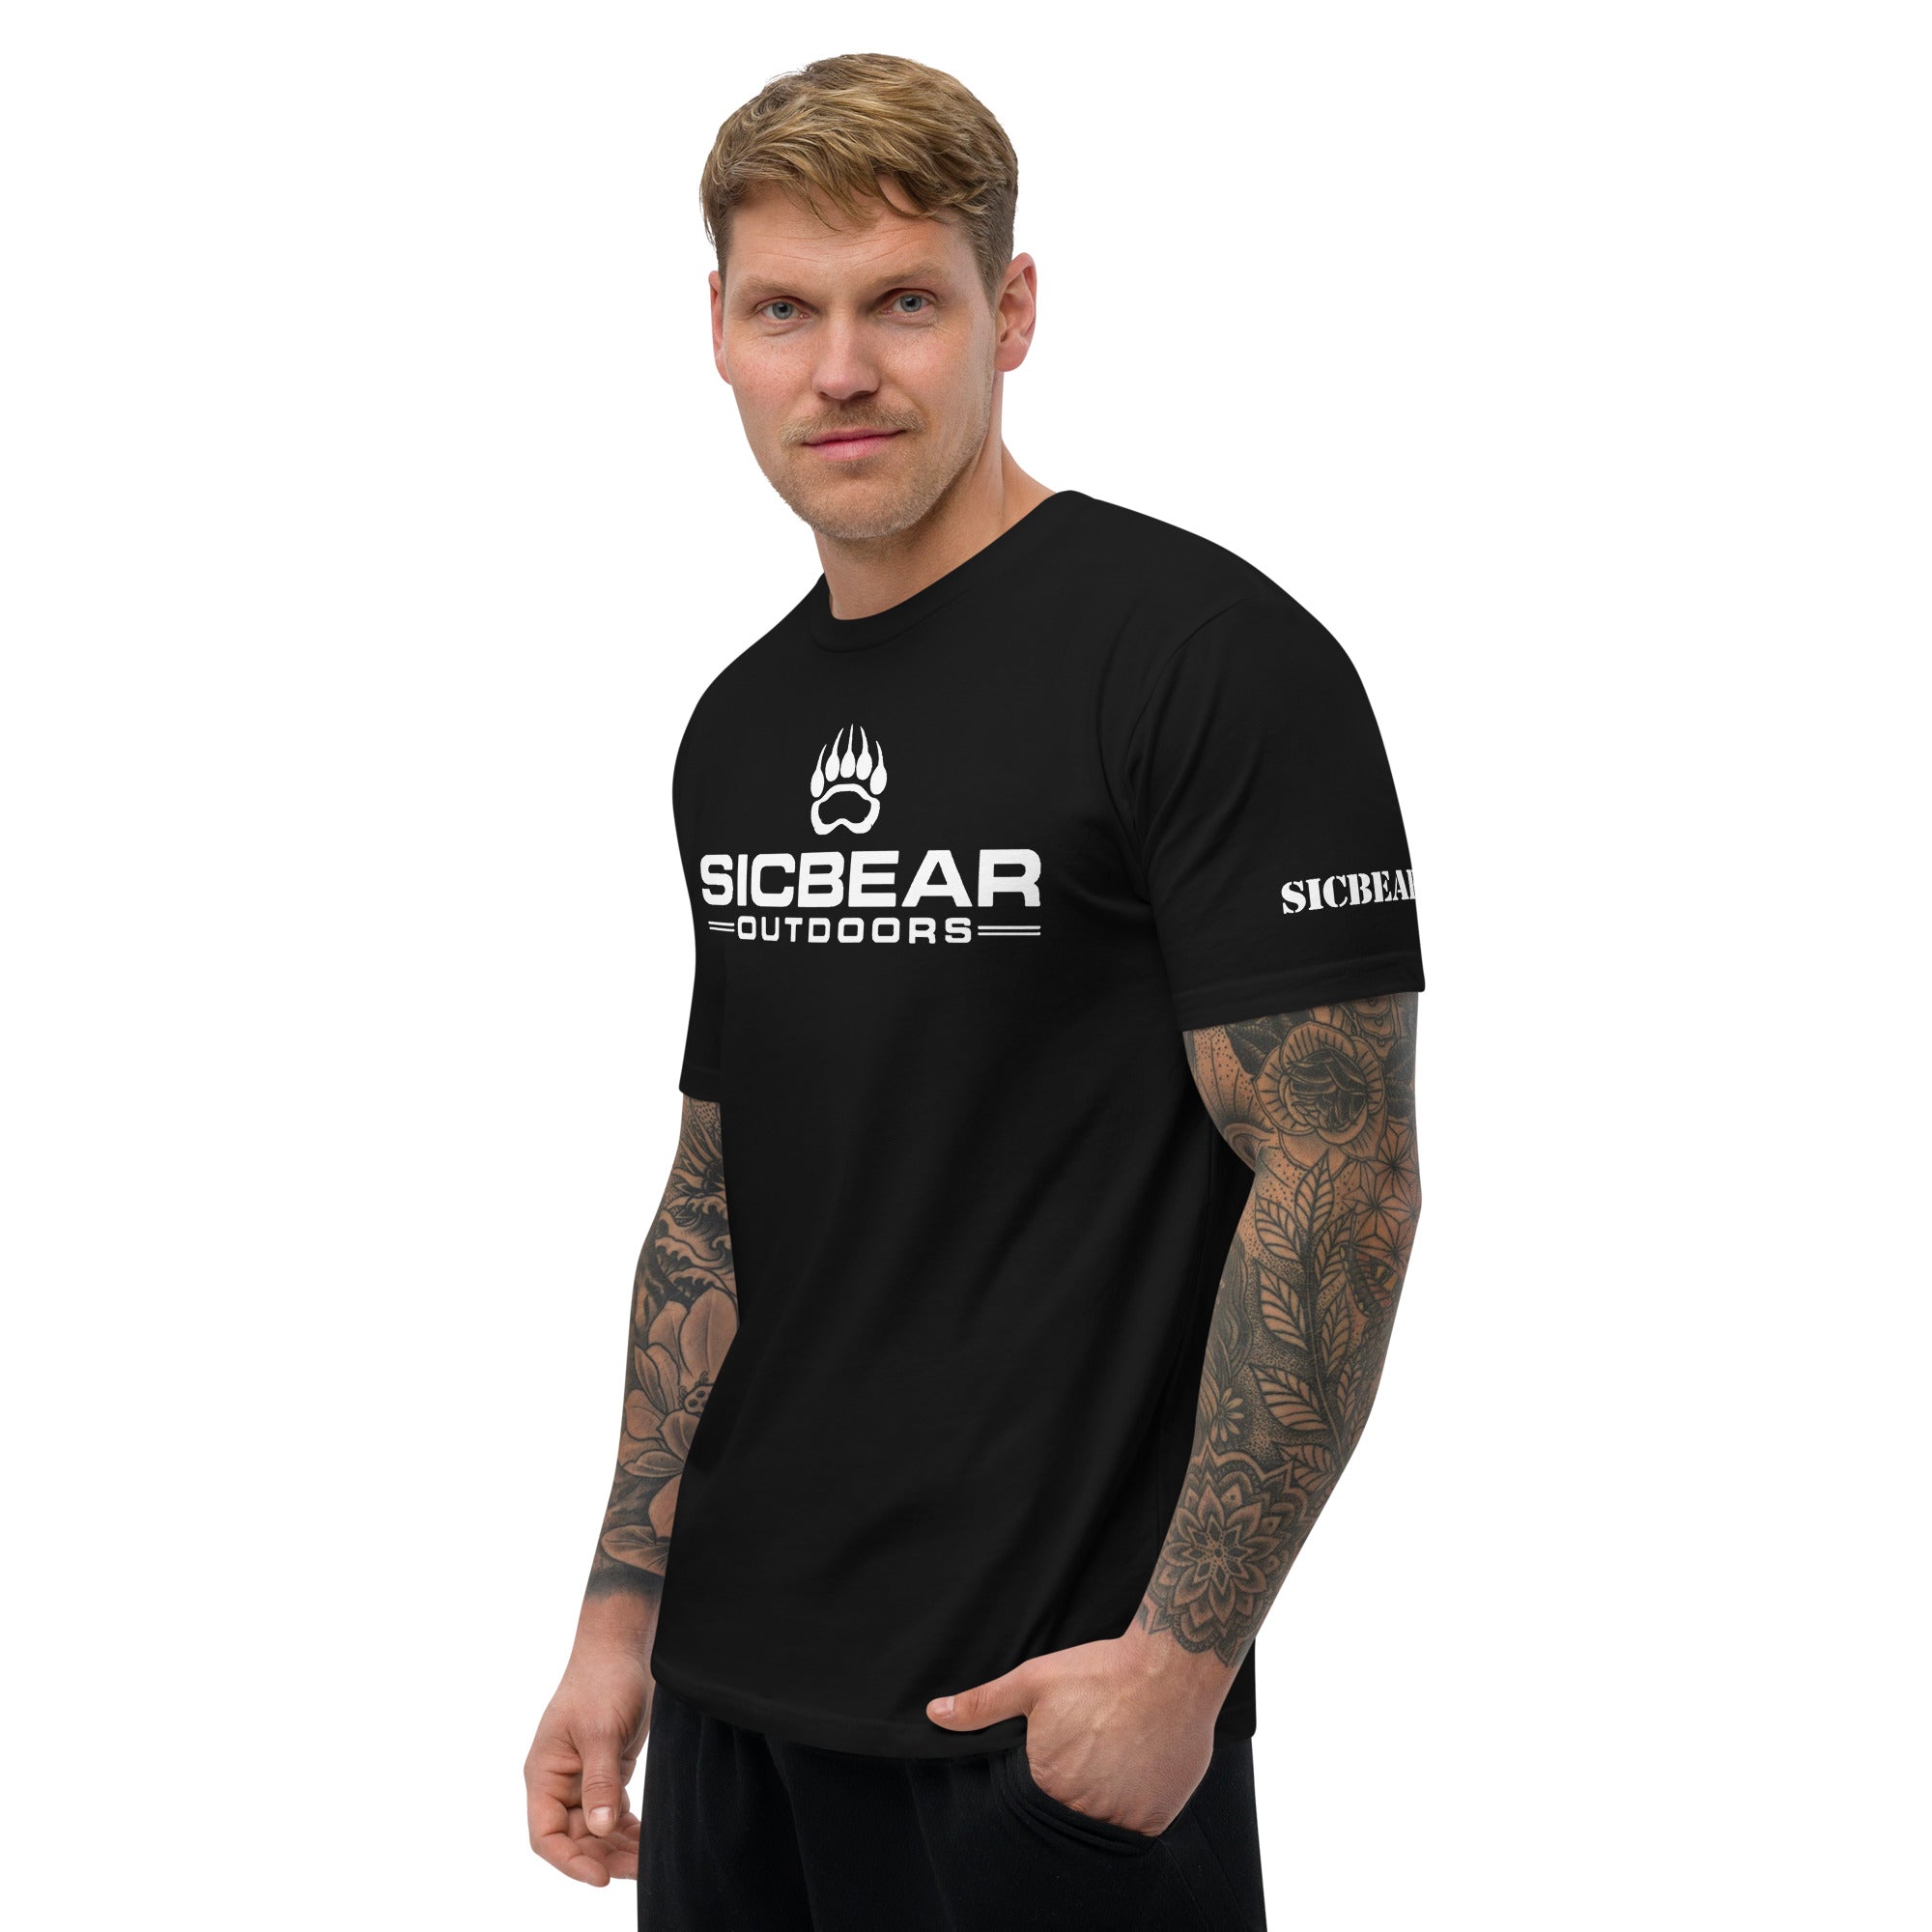 SICBEAR Outdoors Next Level T-shirt